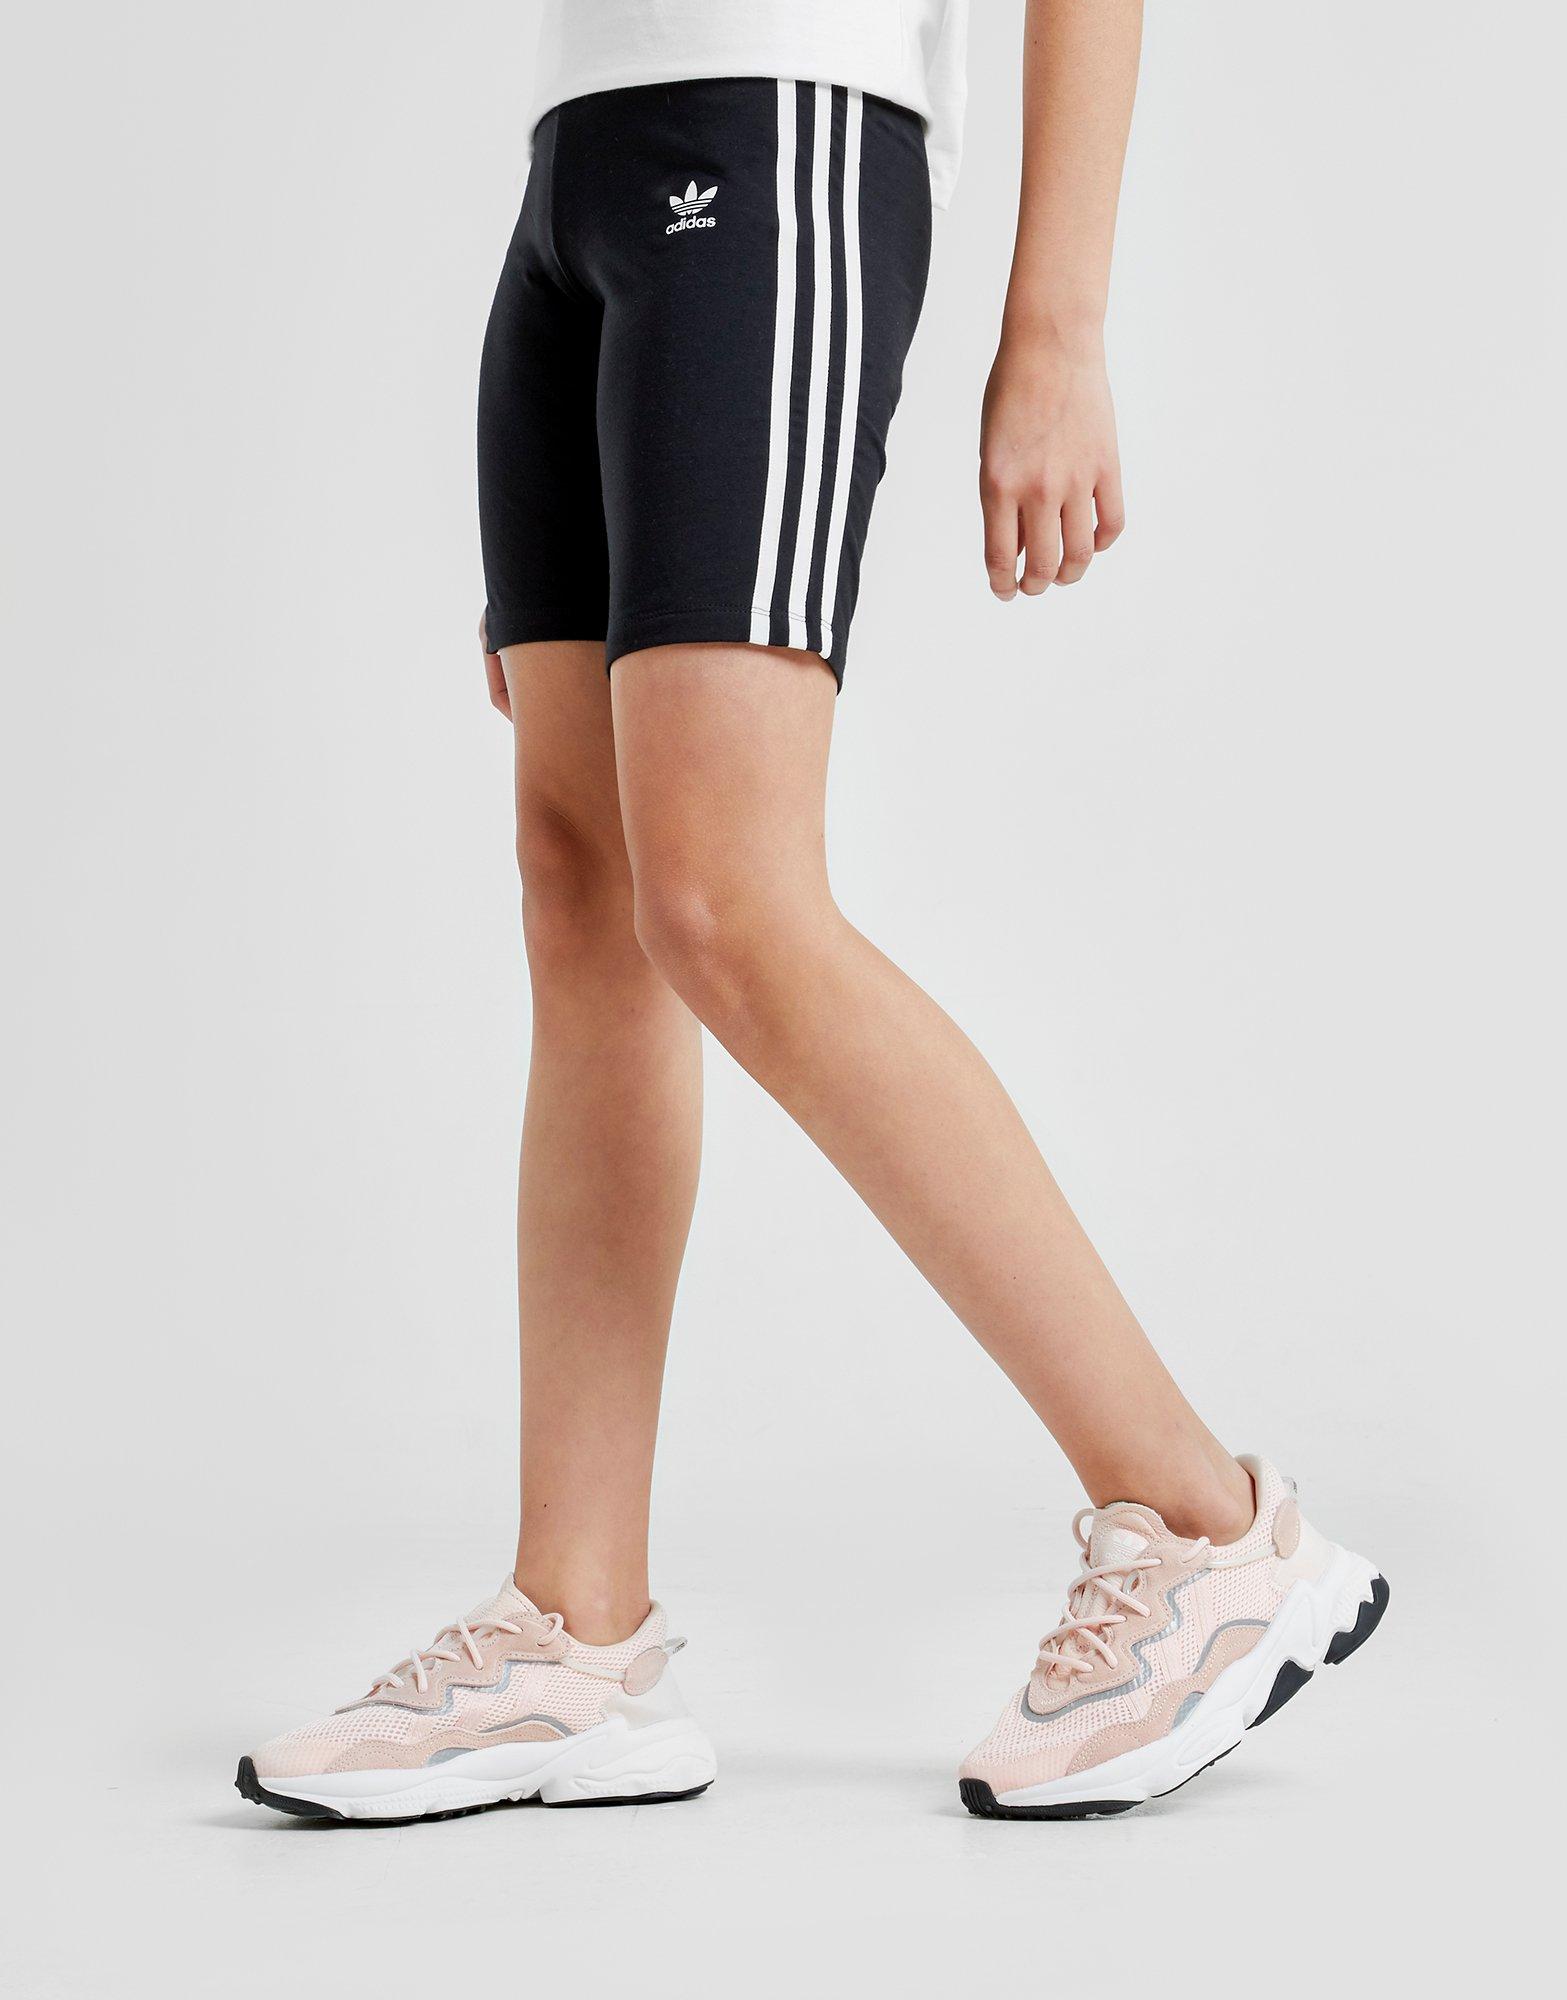 girls adidas cycle shorts